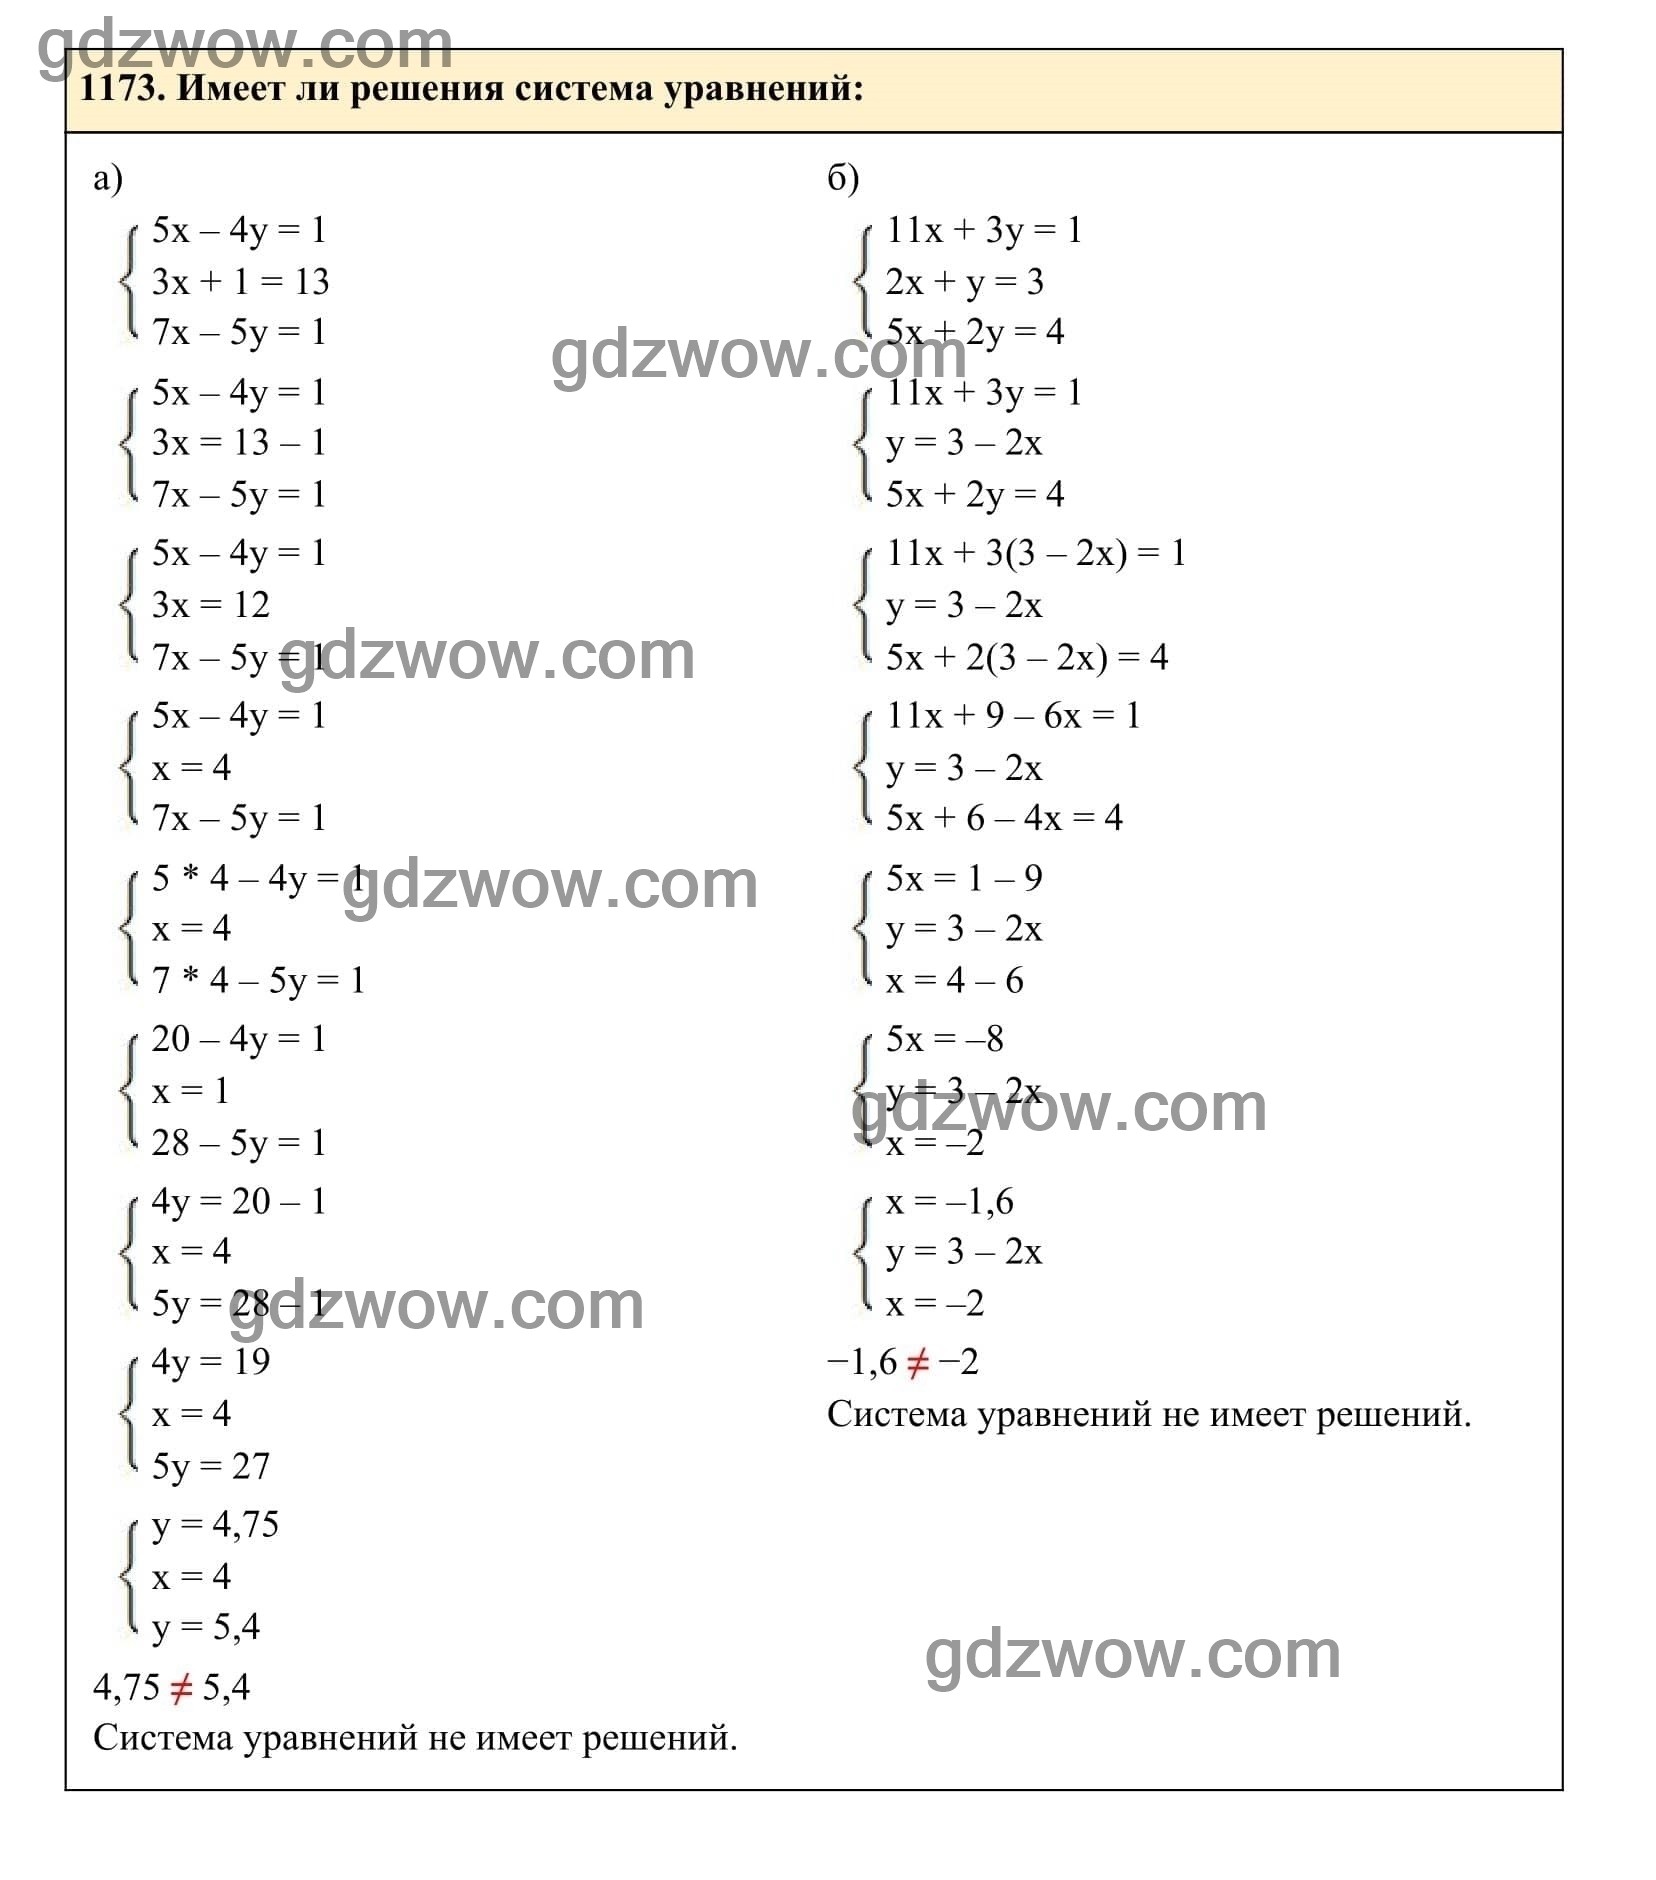 Упражнение 1173 - ГДЗ по Алгебре 7 класс Учебник Макарычев (решебник) - GDZwow